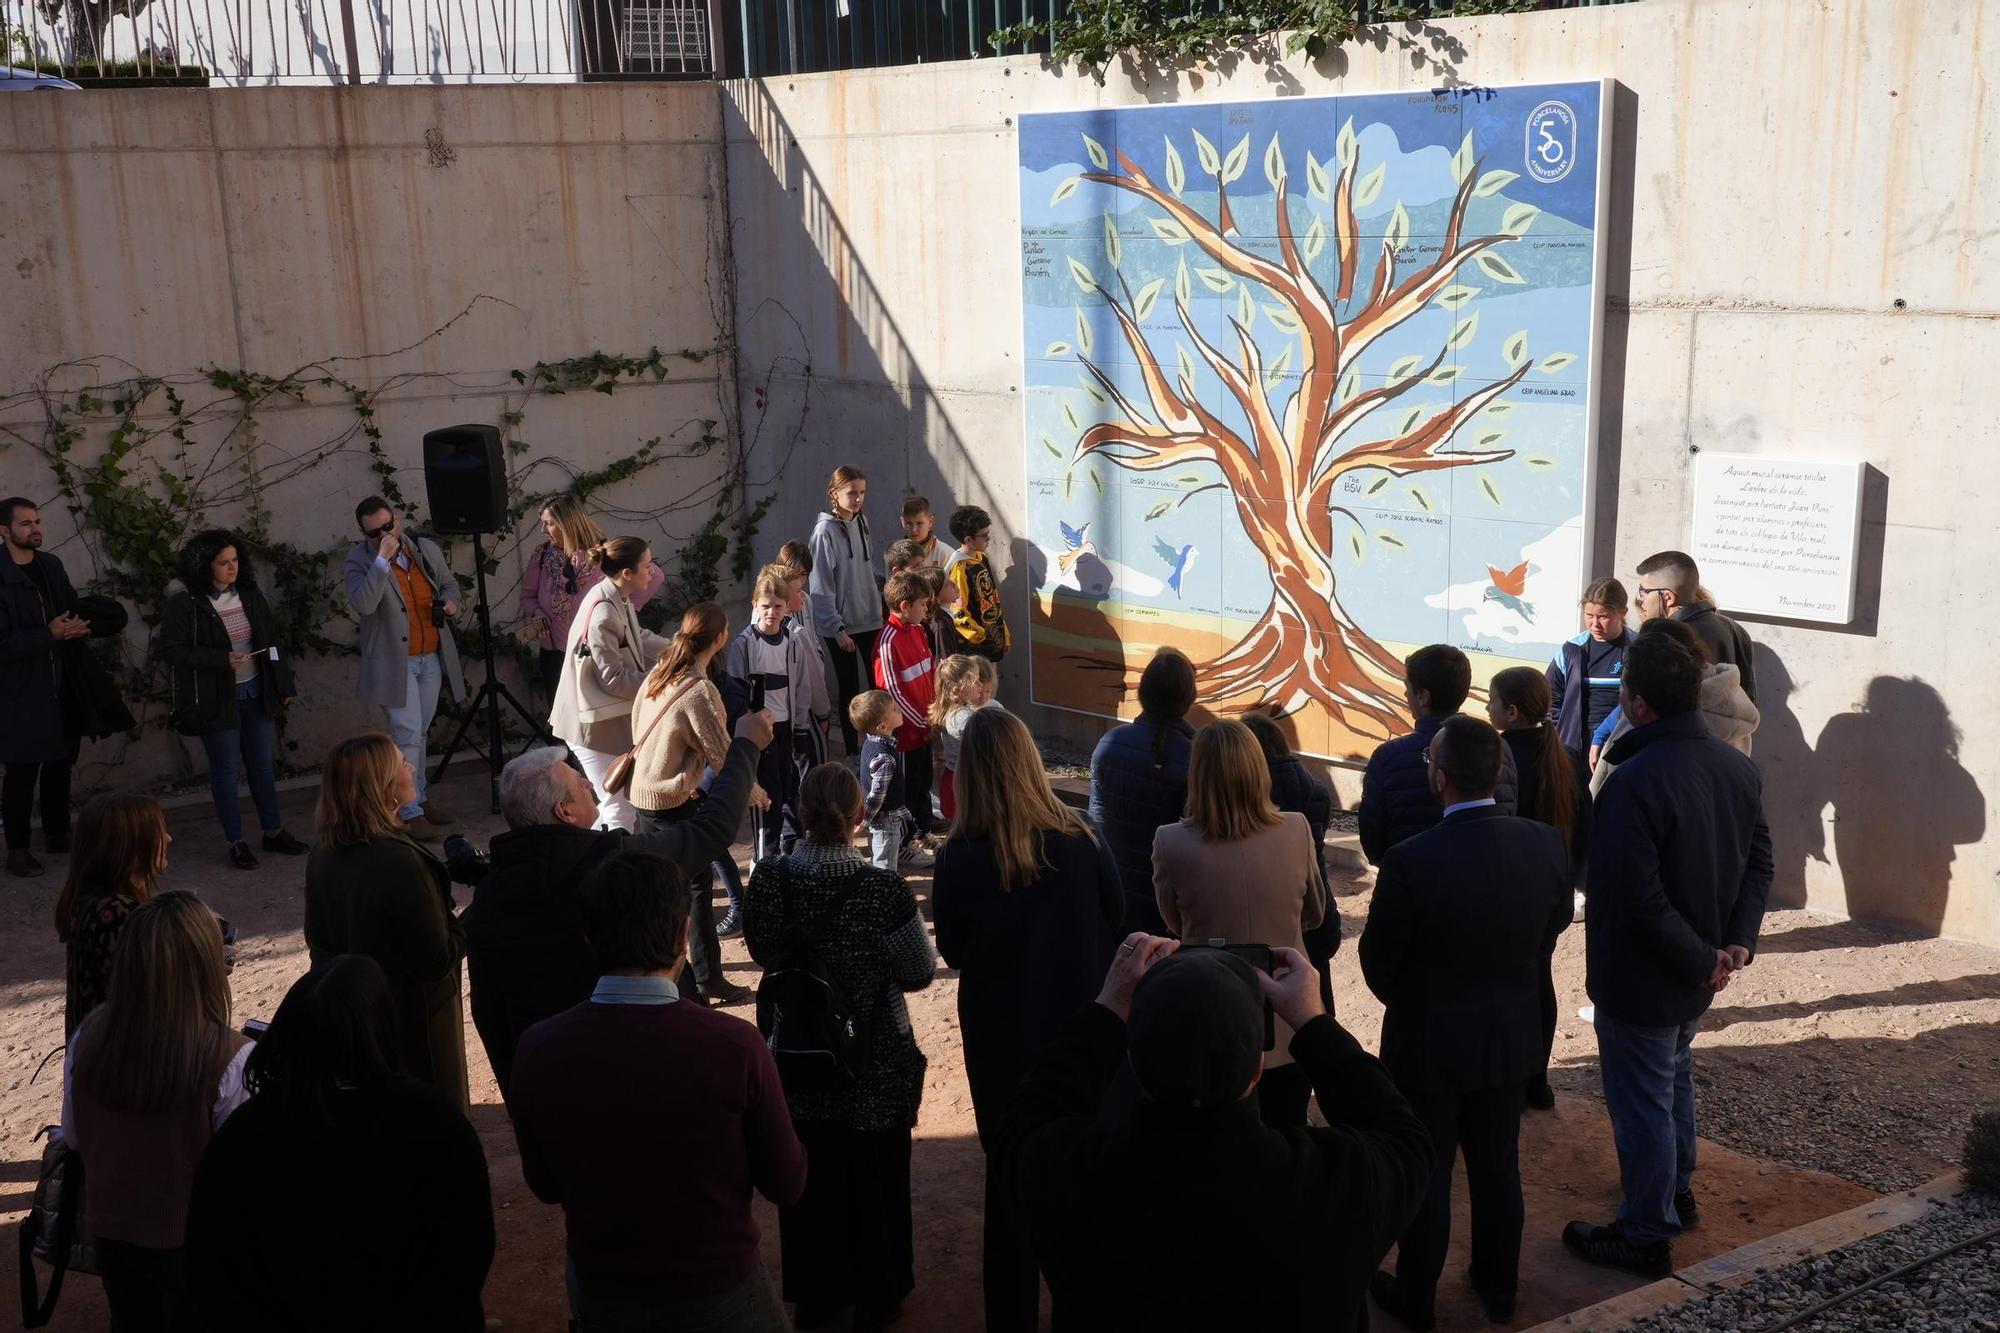 Las imágenes del mural del 50º aniversario de Porcelanosa en el Molí la Vila